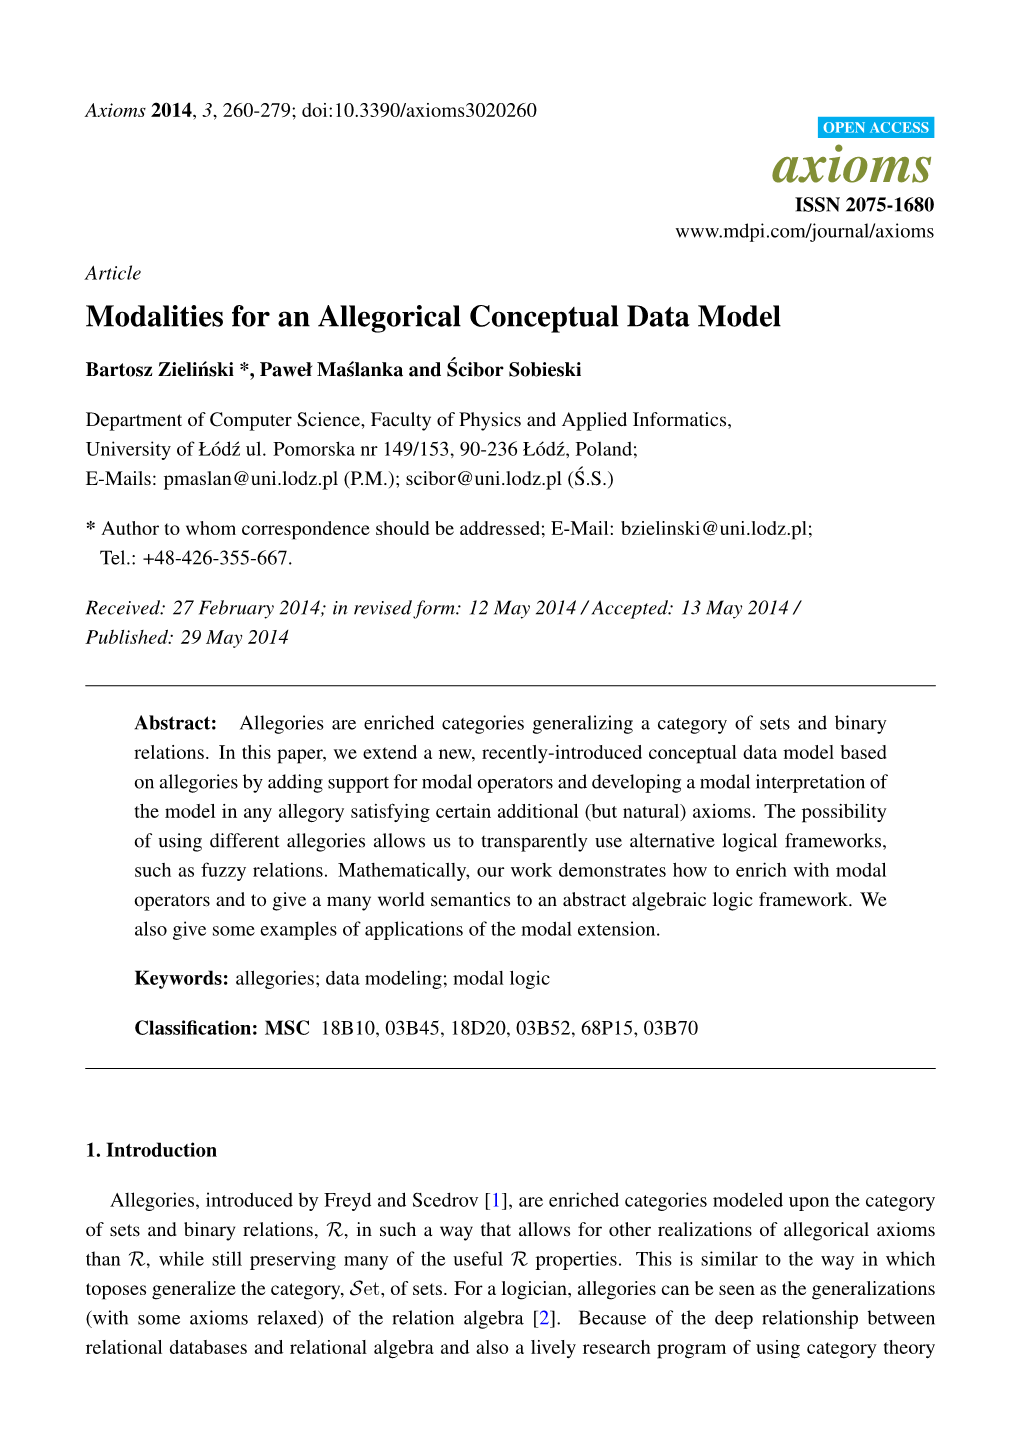 Modalities for an Allegorical Conceptual Data Model